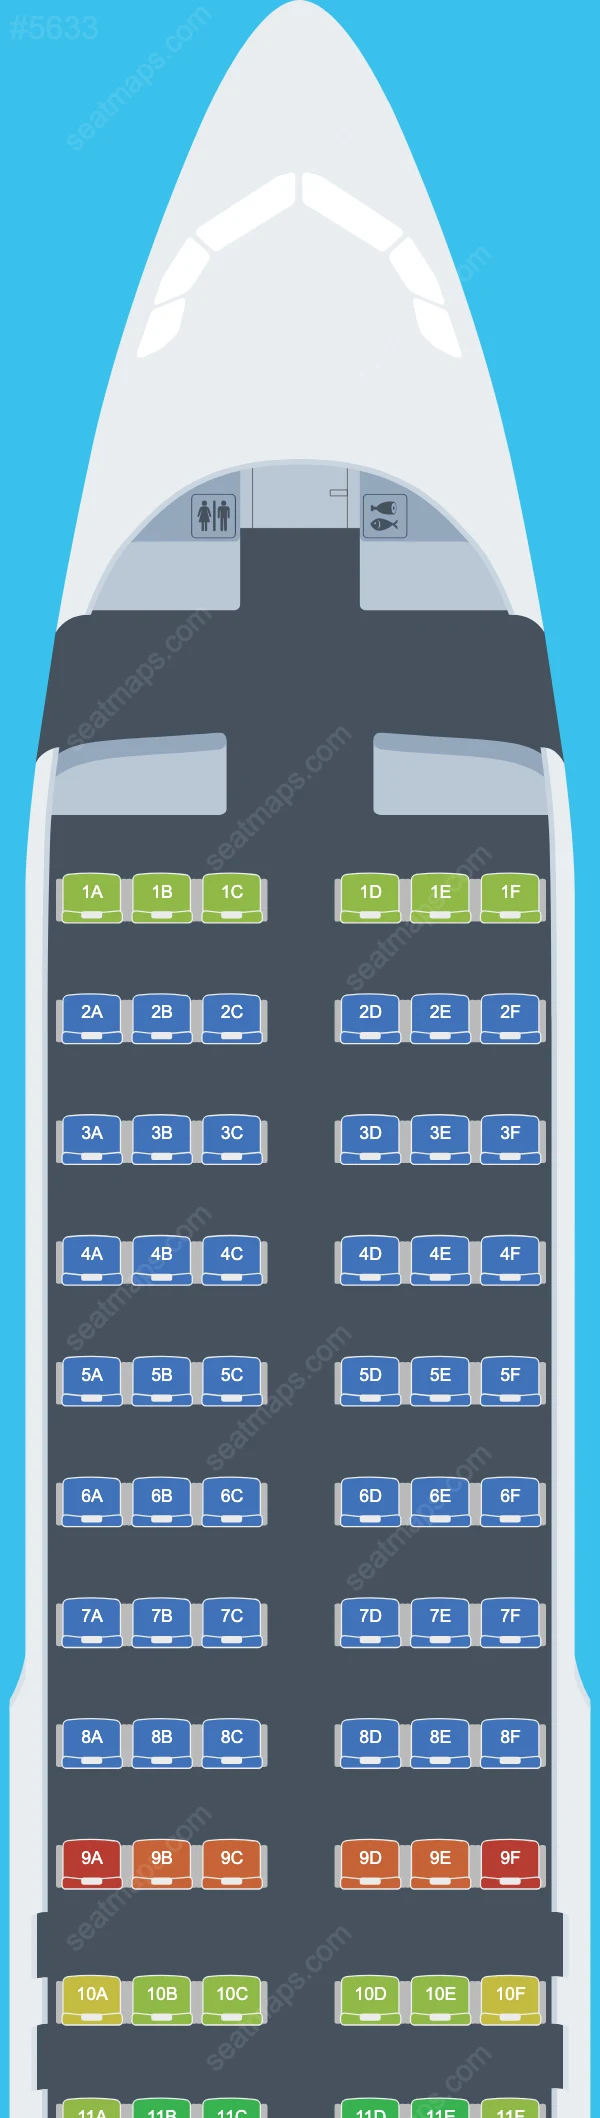 Air Moldova Airbus A320 Seat Maps A320-200